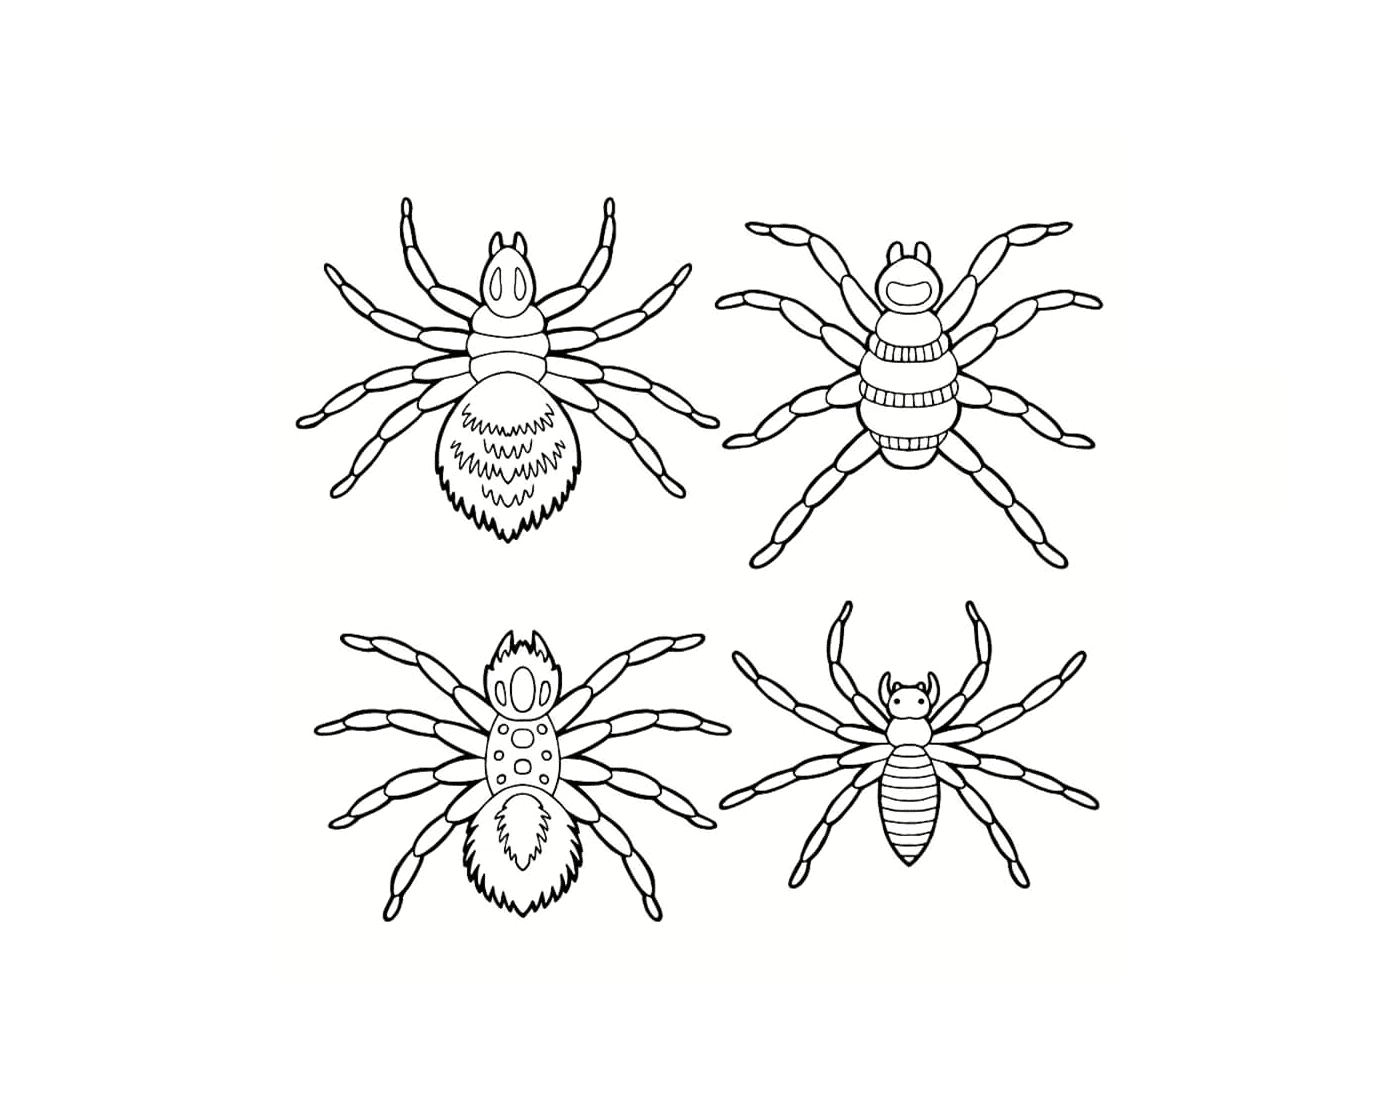   Un ensemble de différentes araignées 